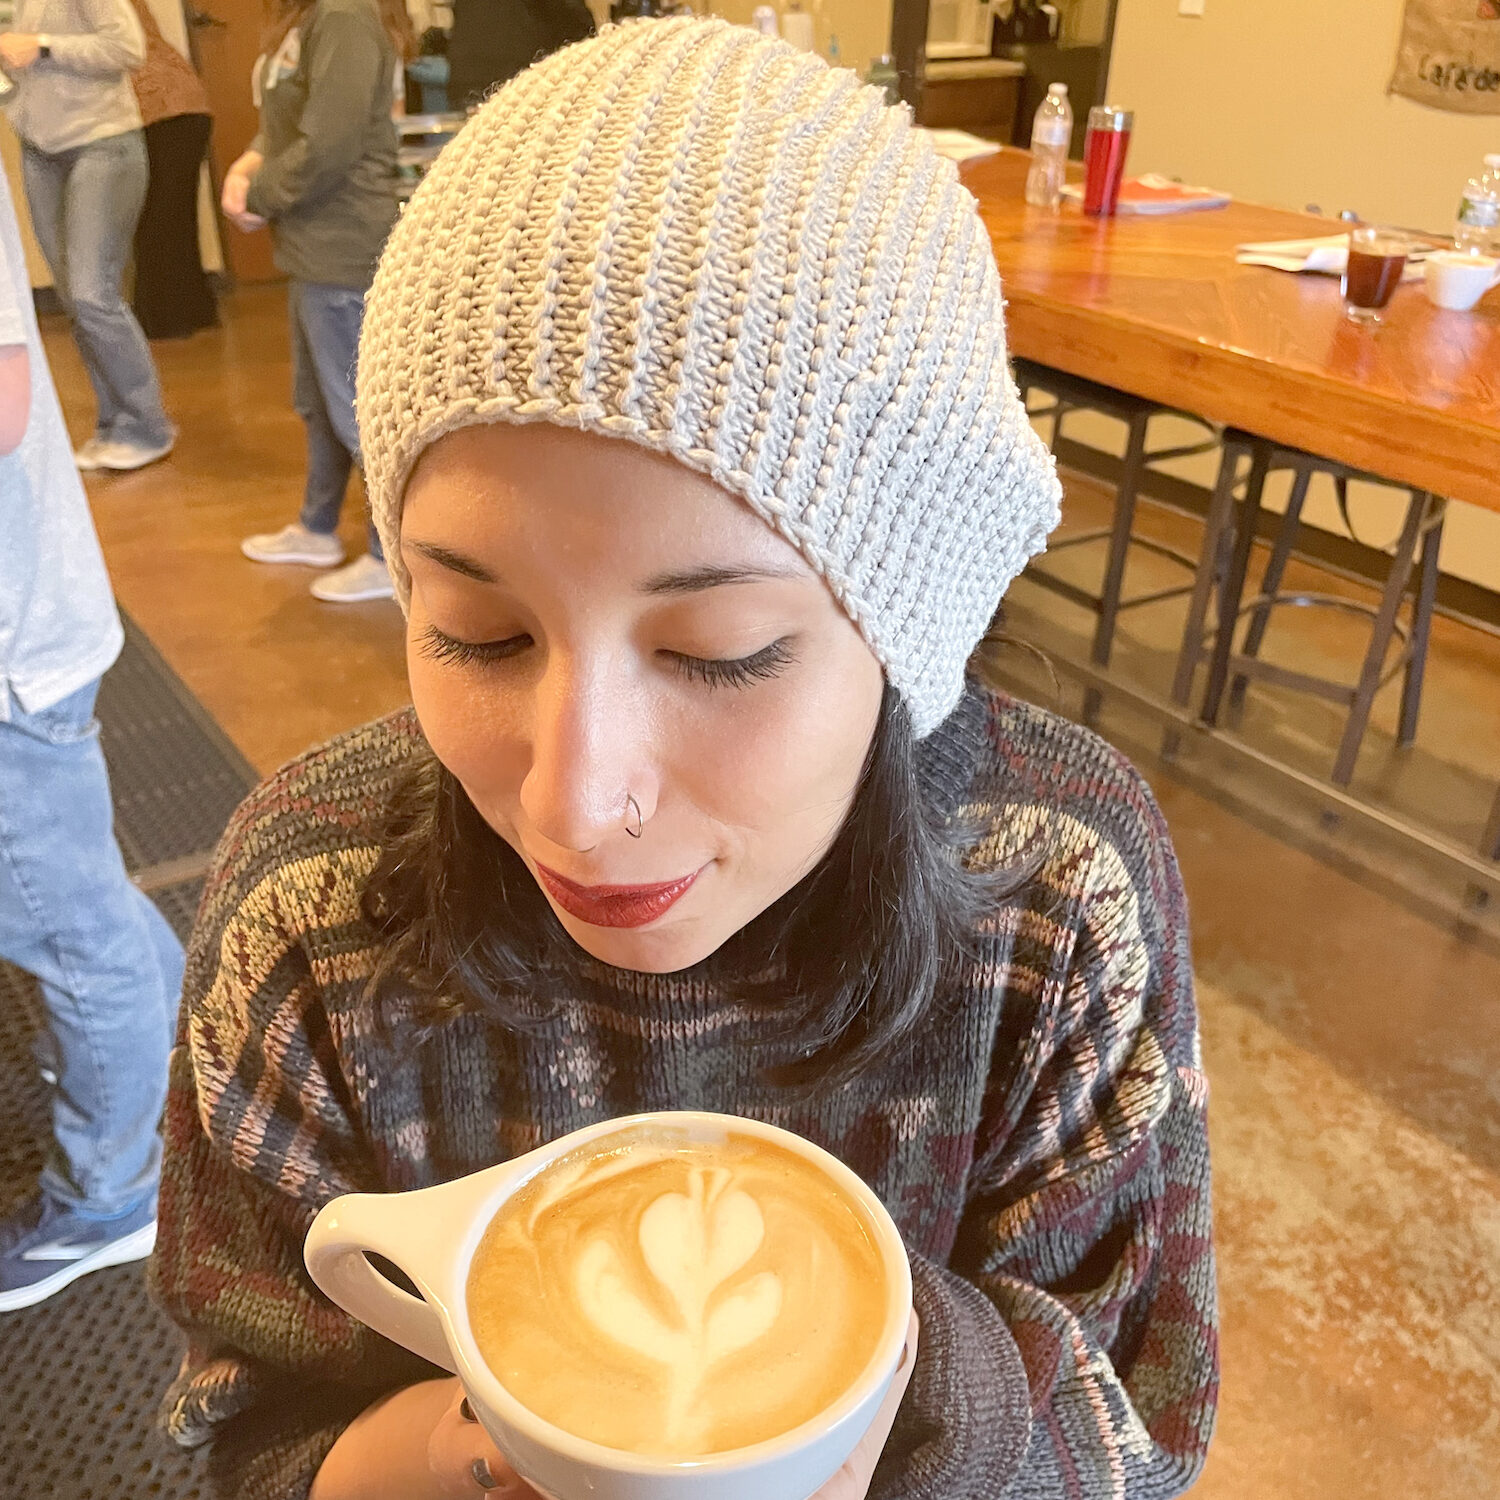 Adrienne at Texas Coffee School.